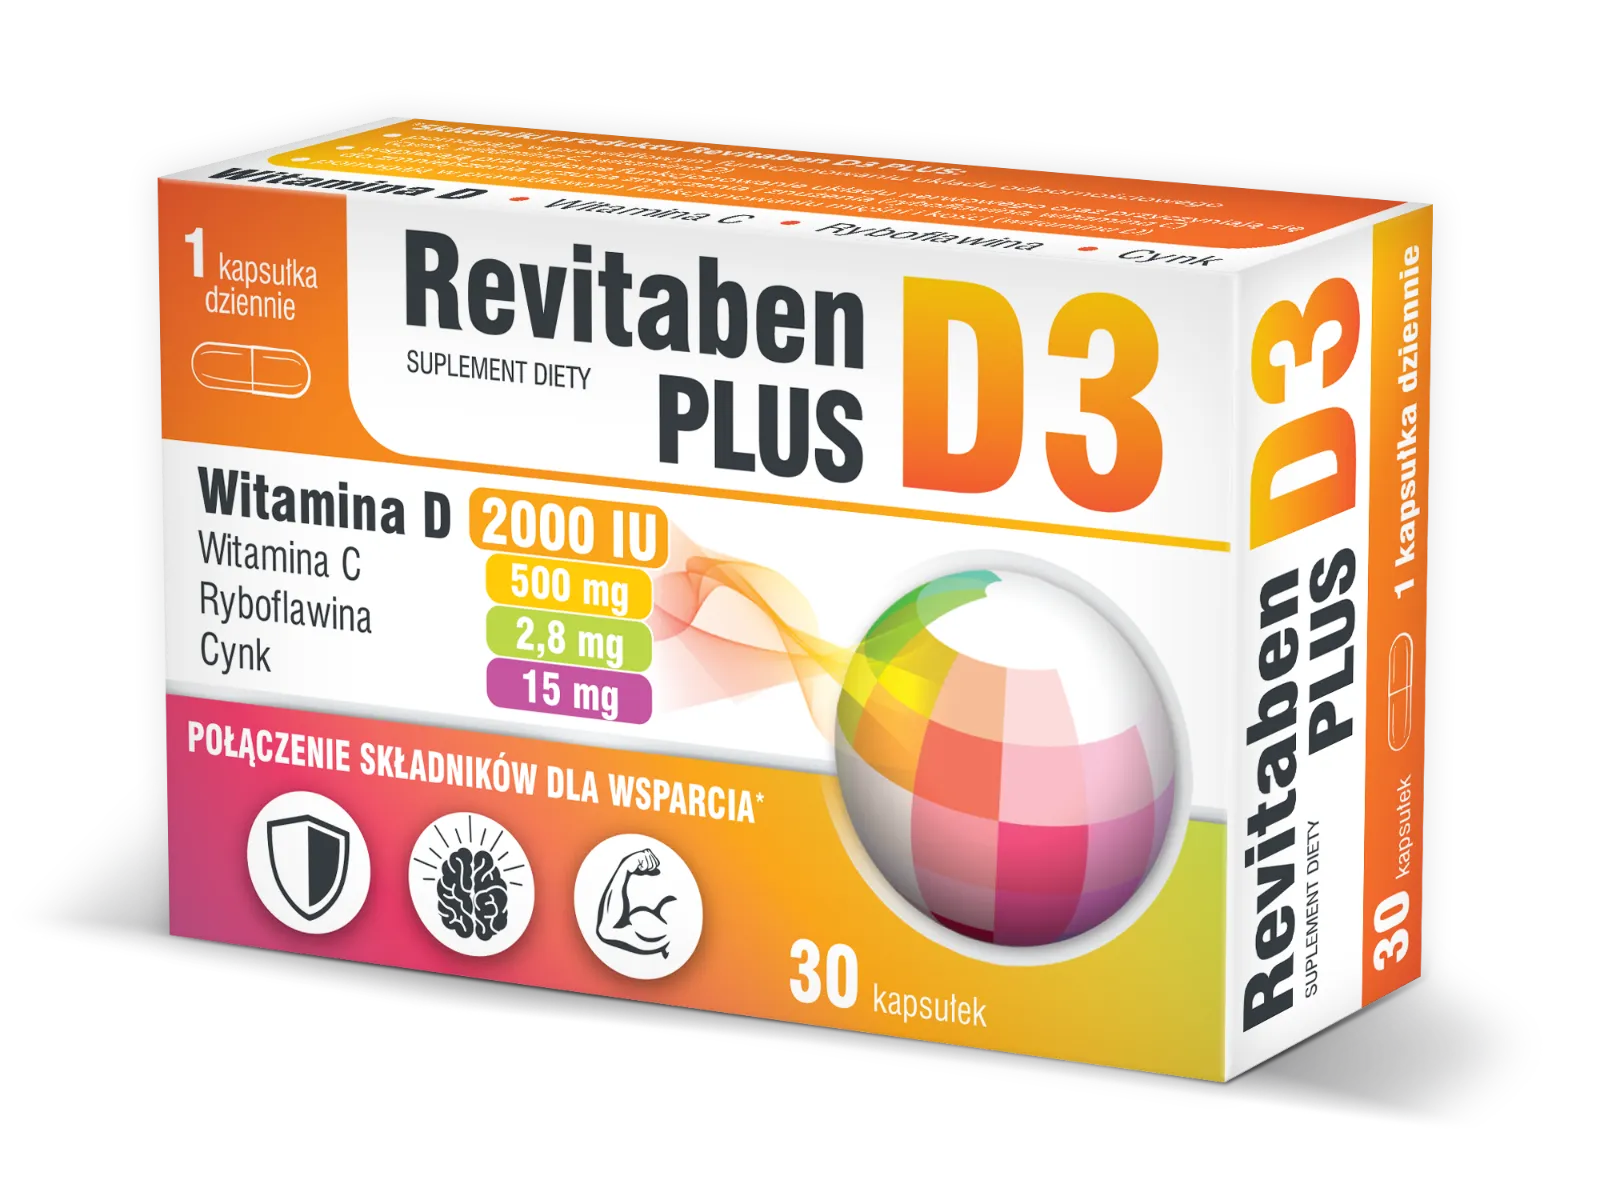 Revitaben D3 Plus, 30 kapsułek